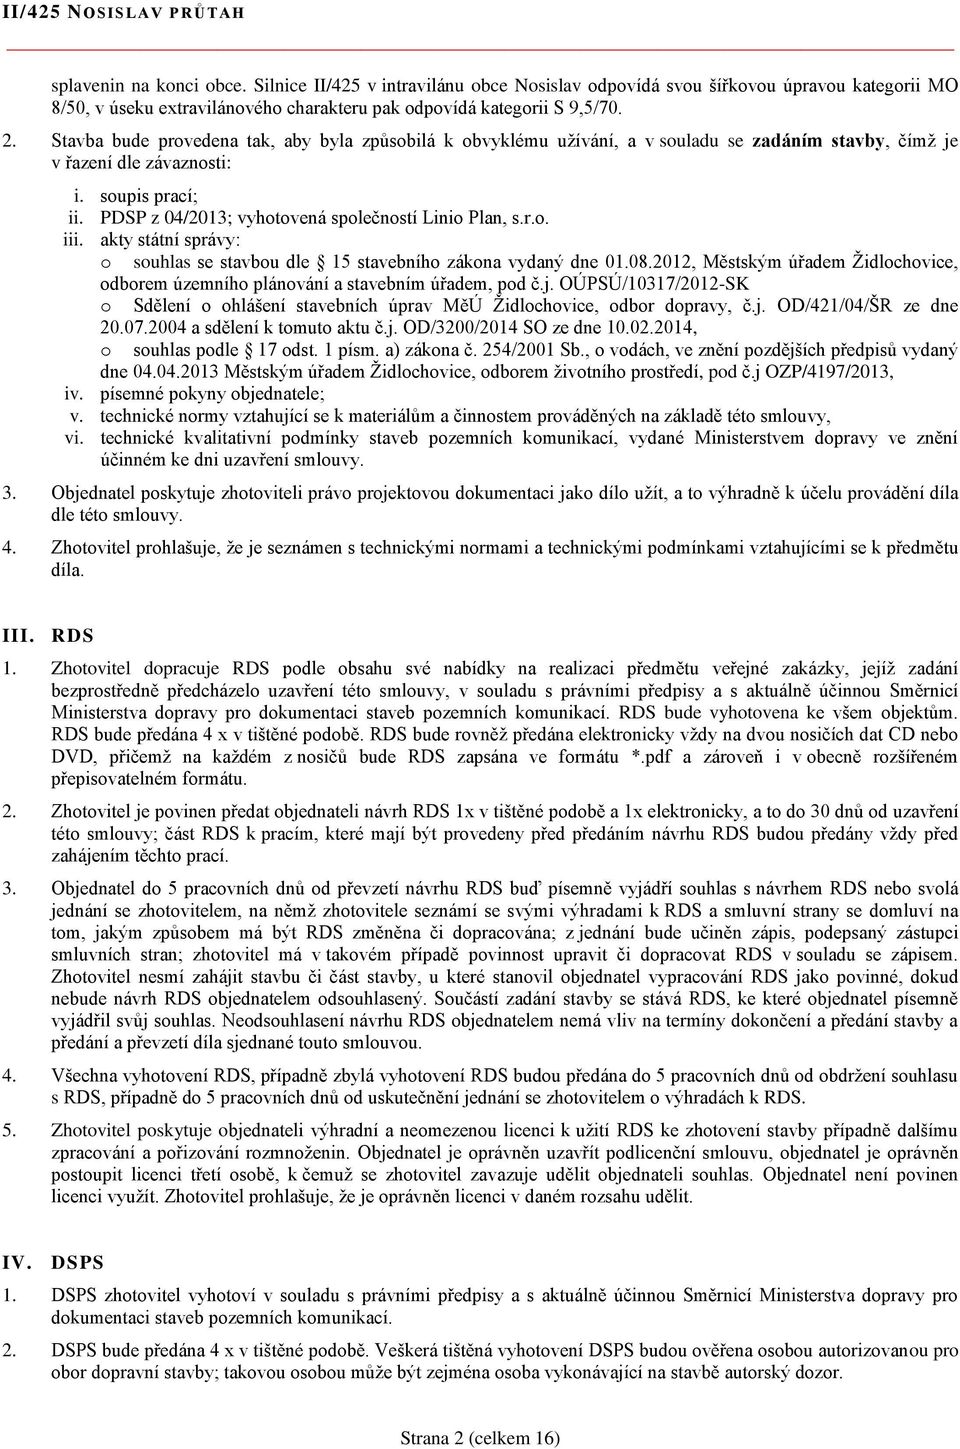 PDSP z 04/2013; vyhotovená společností Linio Plan, s.r.o. iii. akty státní správy: o souhlas se stavbou dle 15 stavebního zákona vydaný dne 01.08.